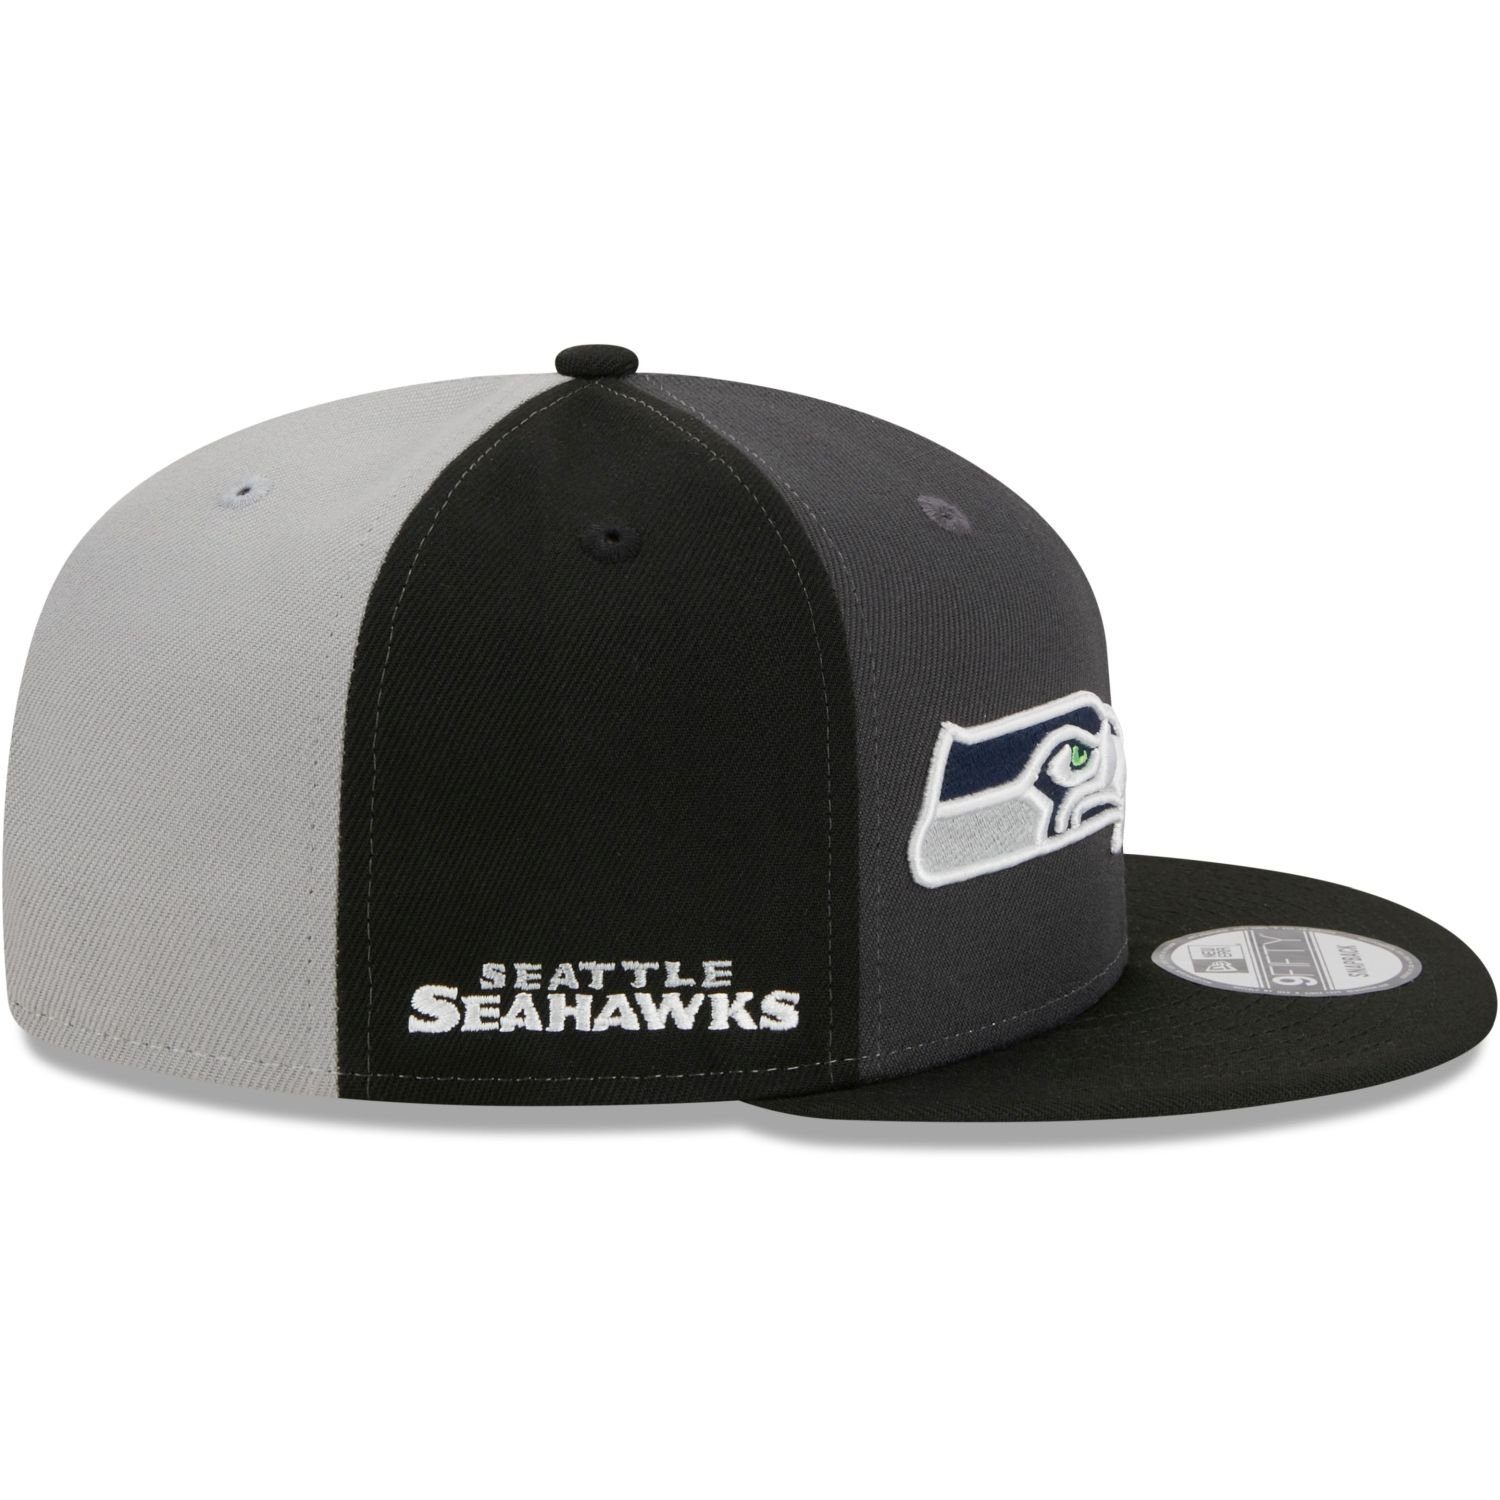 New Seahawks Cap Seattle Sideline 9Fifty Era Snapback